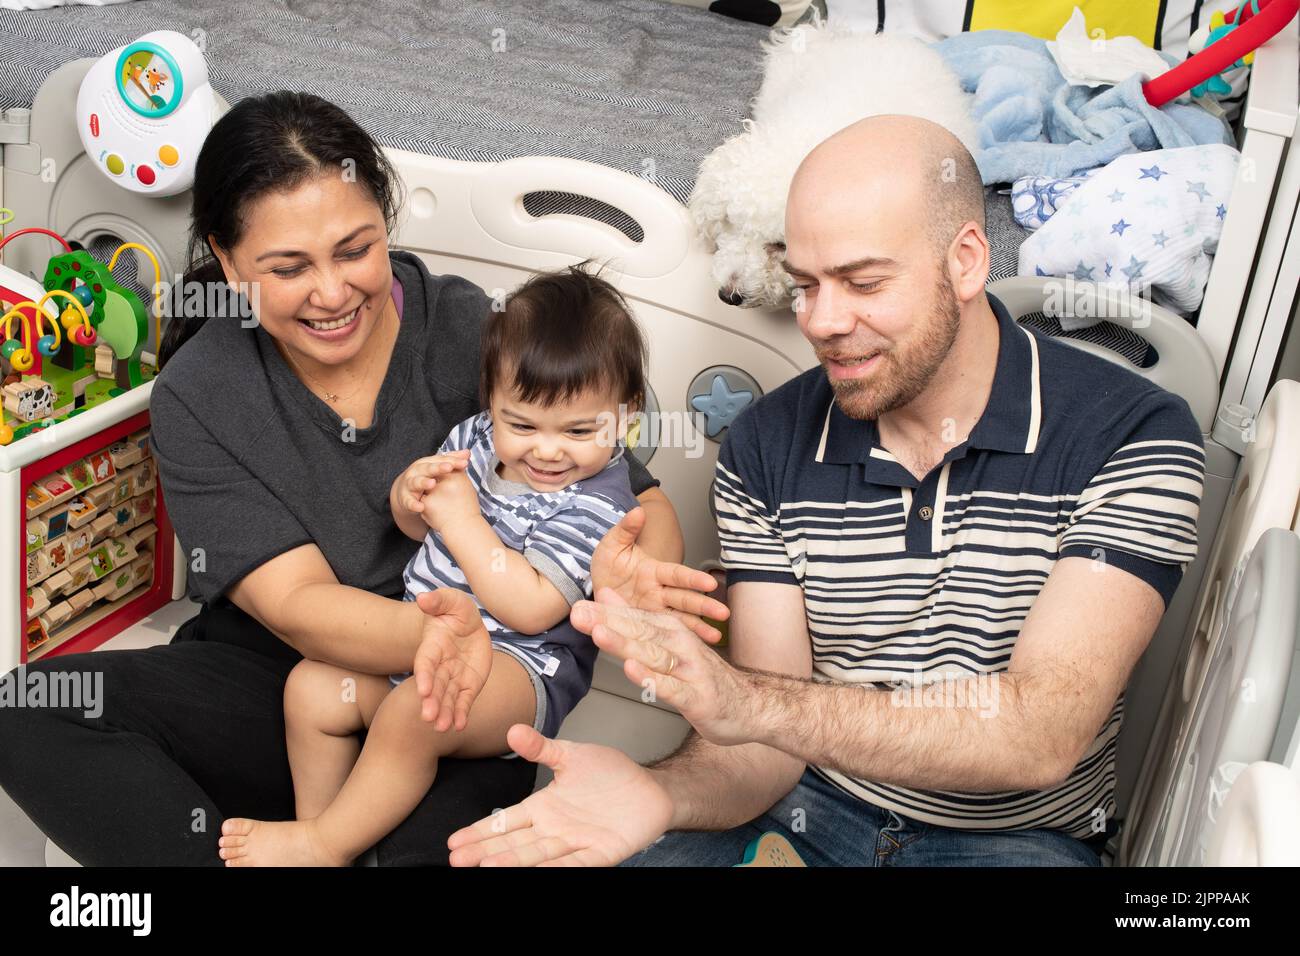 niño de 11 meses en casa con sus padres cantando canciones con gestos de mano Foto de stock